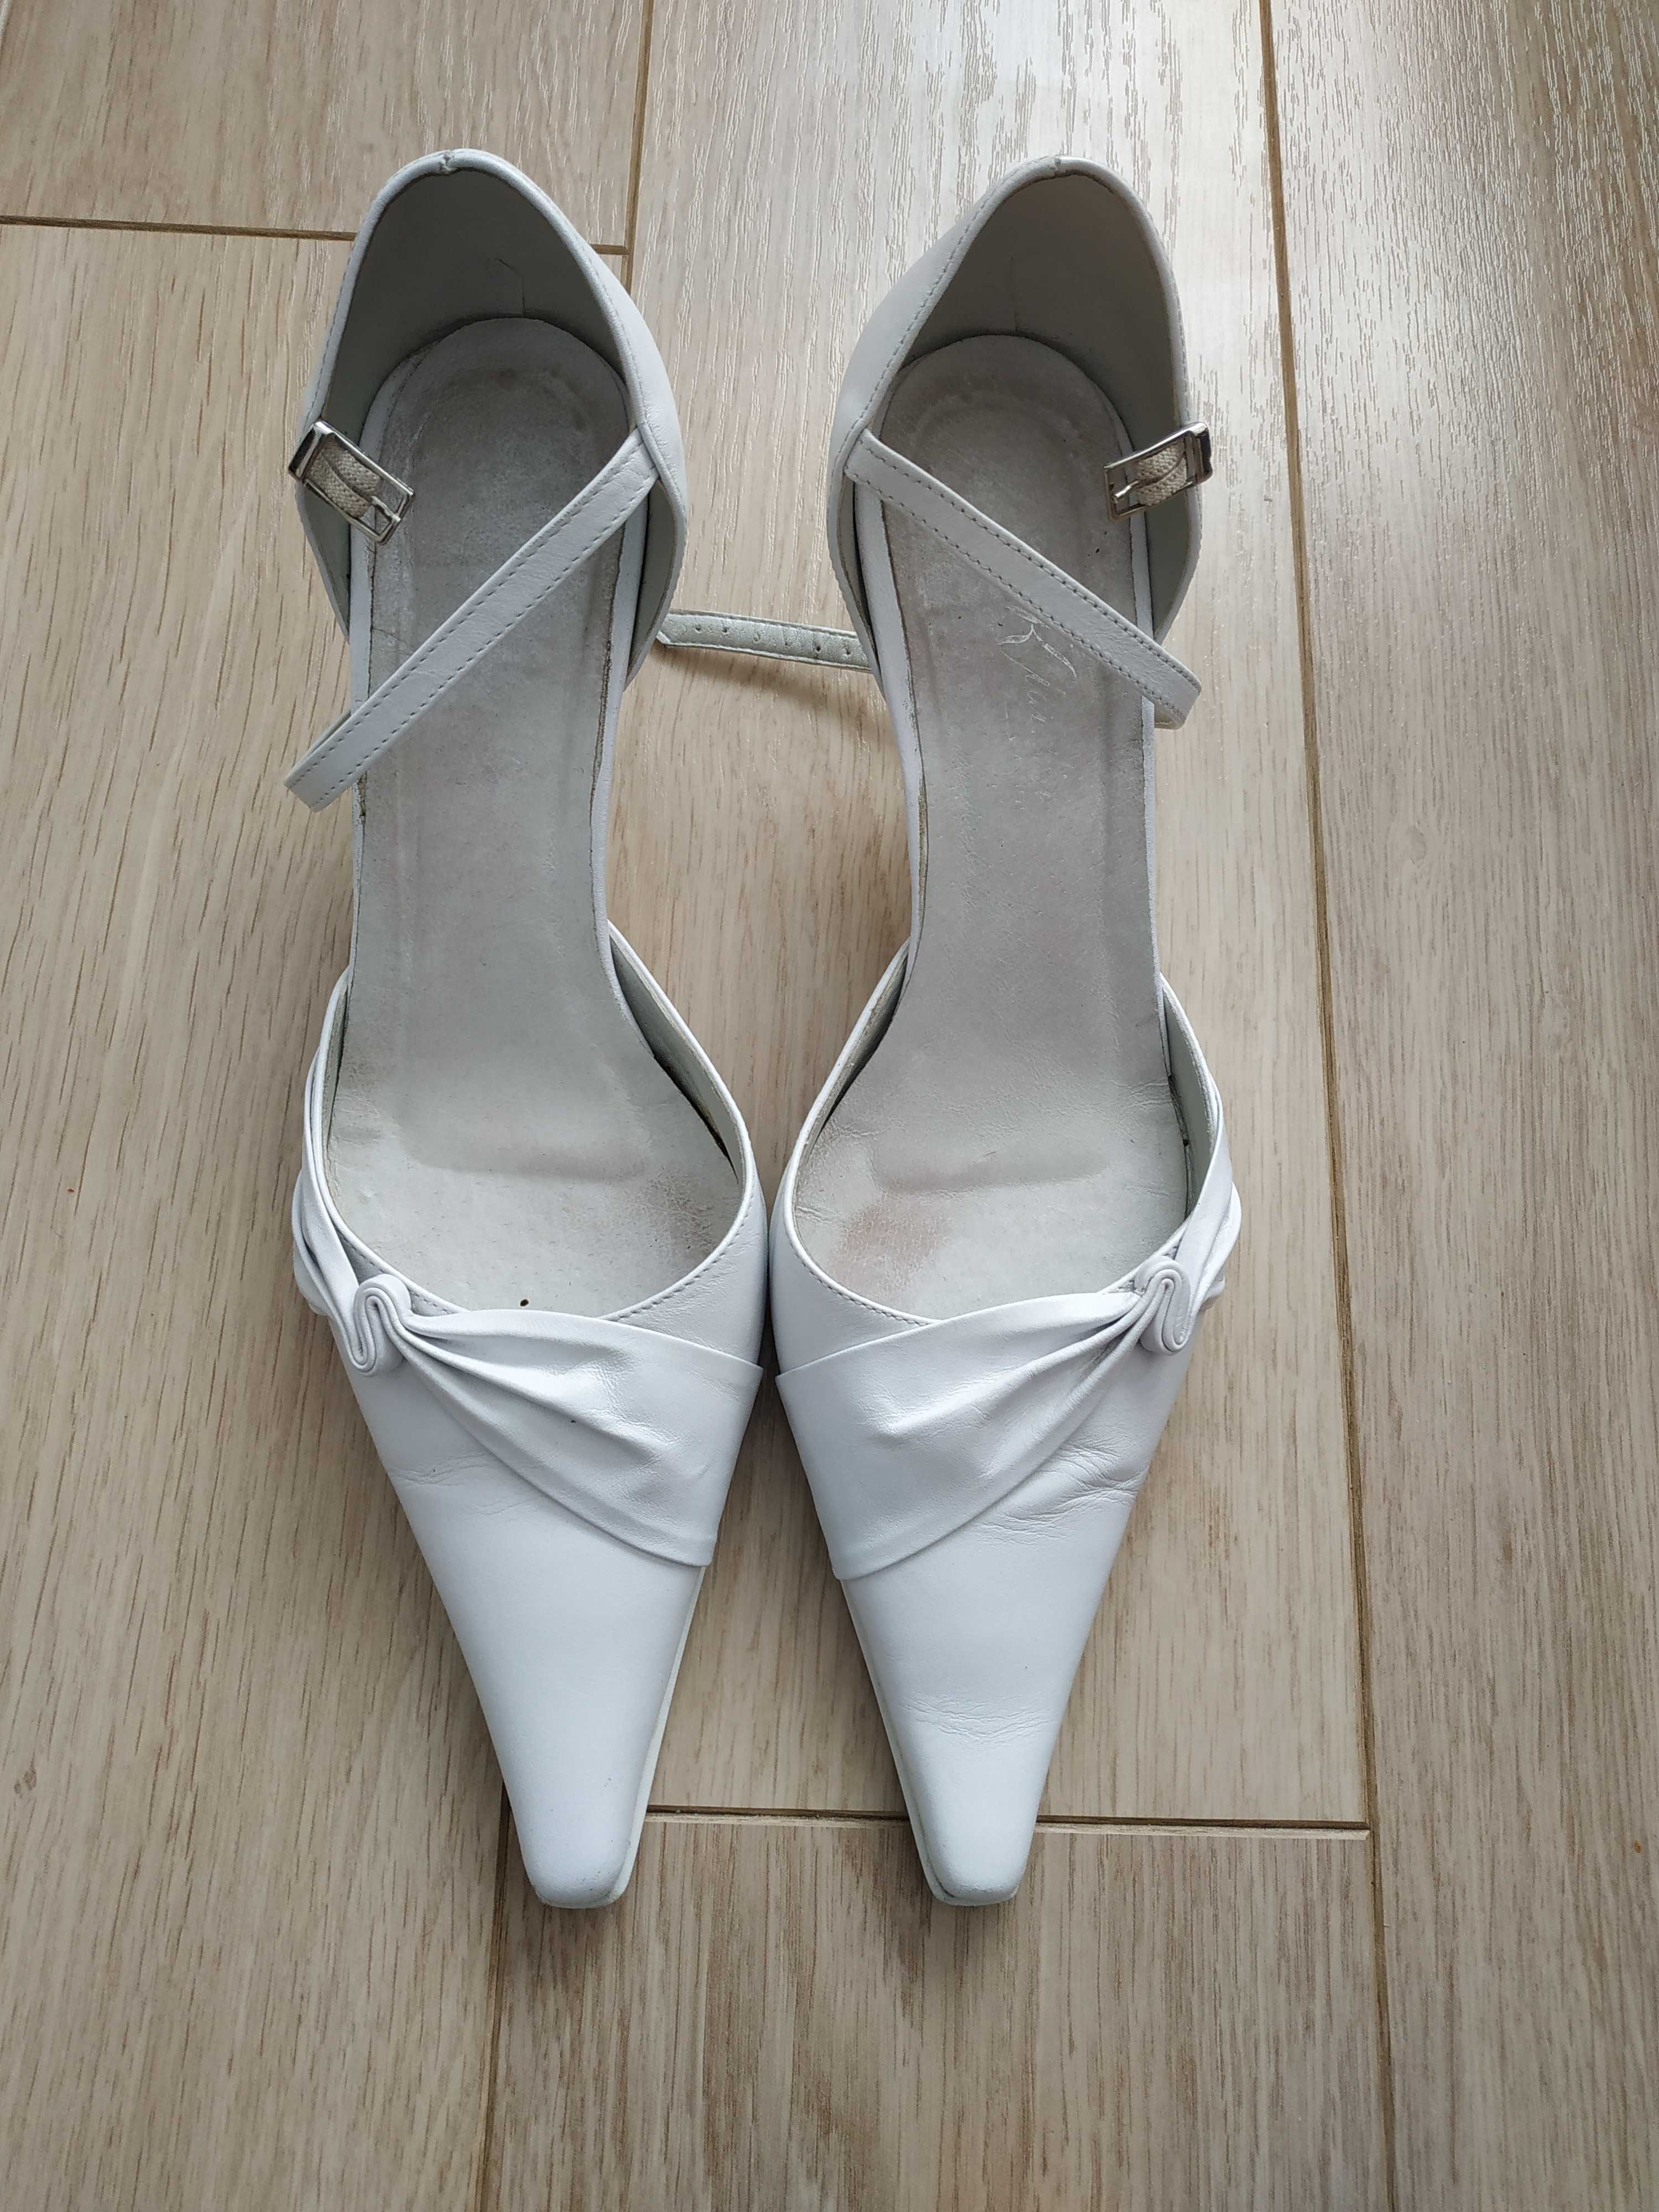 Buty ślubne białe szpilki ze skóry KLAUDIA-Paris roz 37 - wow :)